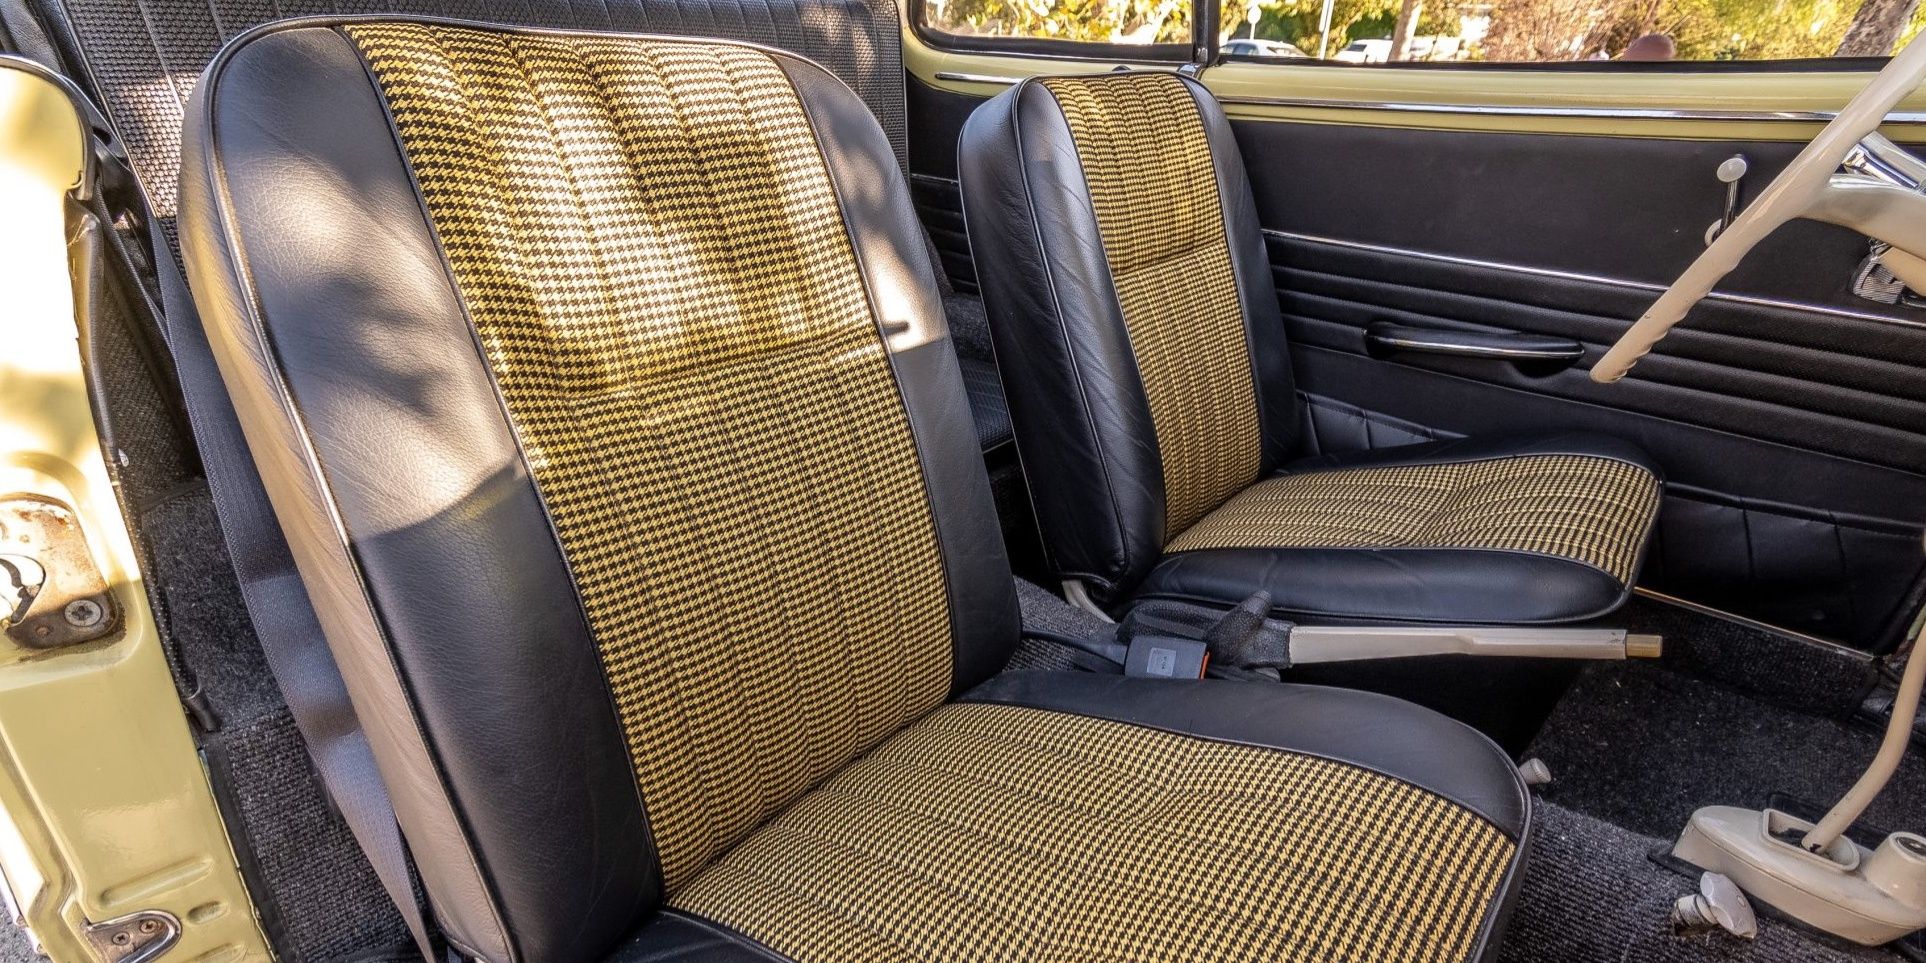 VW Karmann Ghia Interior Cabin Seats